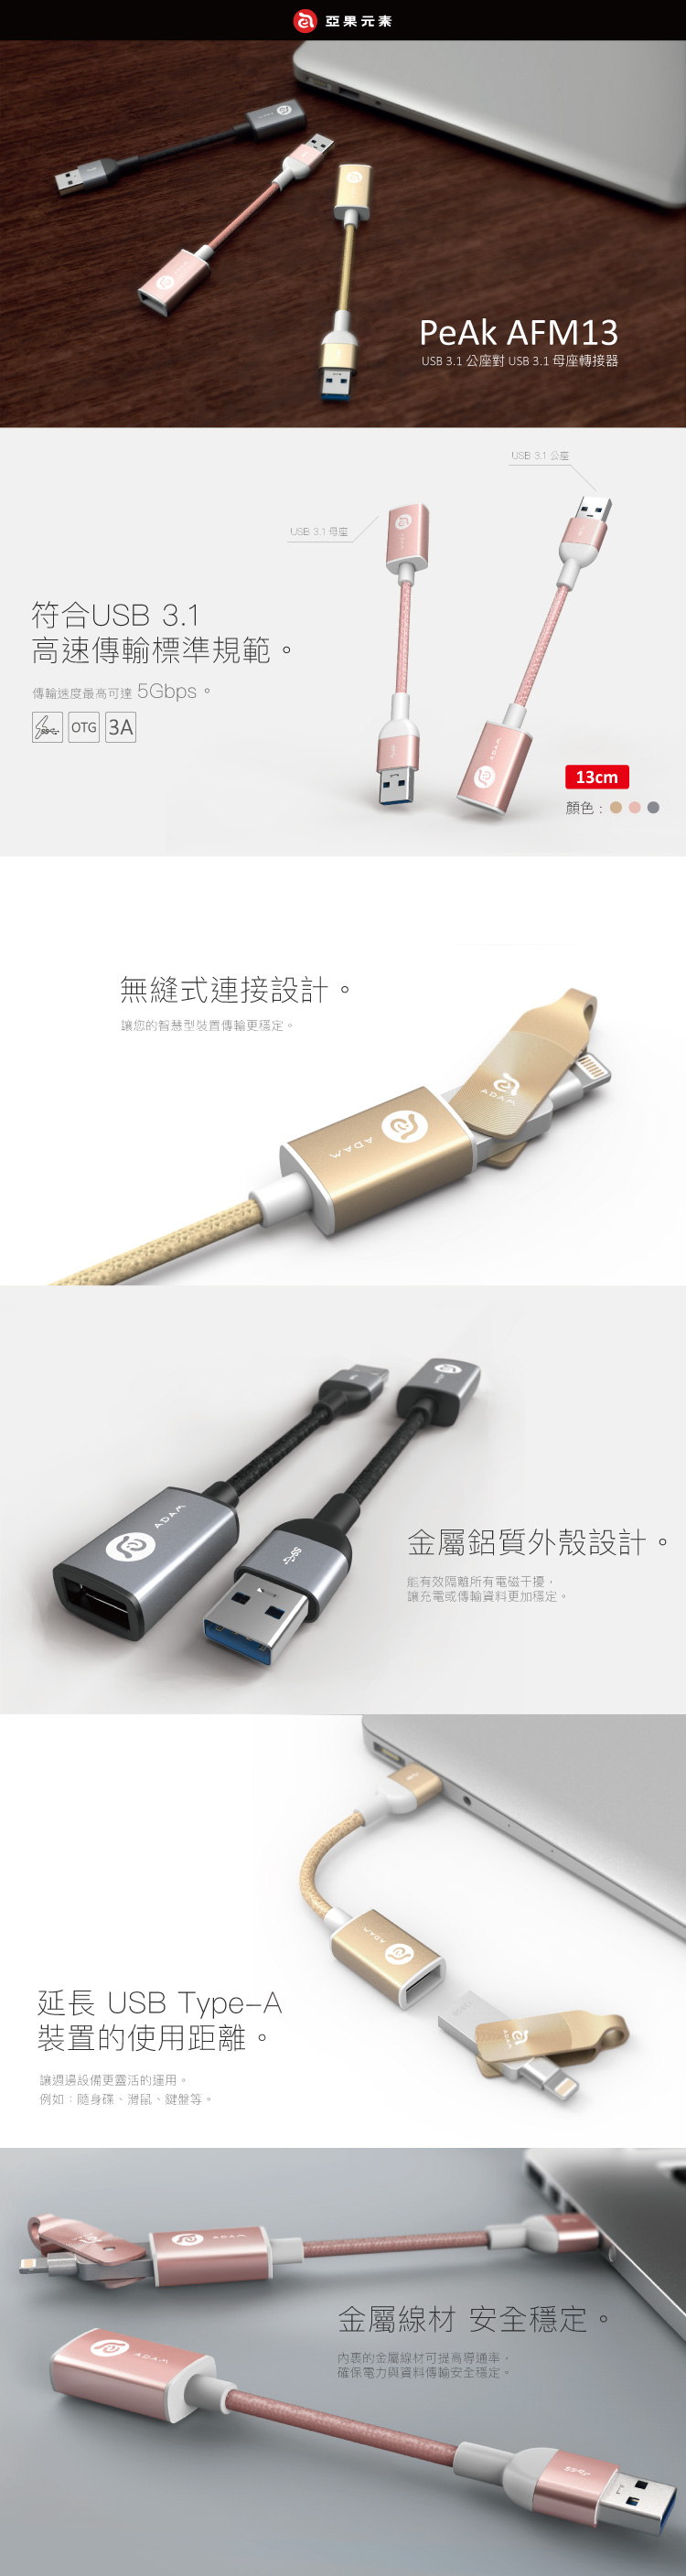 亞果元素 PeAk AFM13 USB3.1 公座對 USB3.1 母座轉接器 13cm( 玫瑰金)